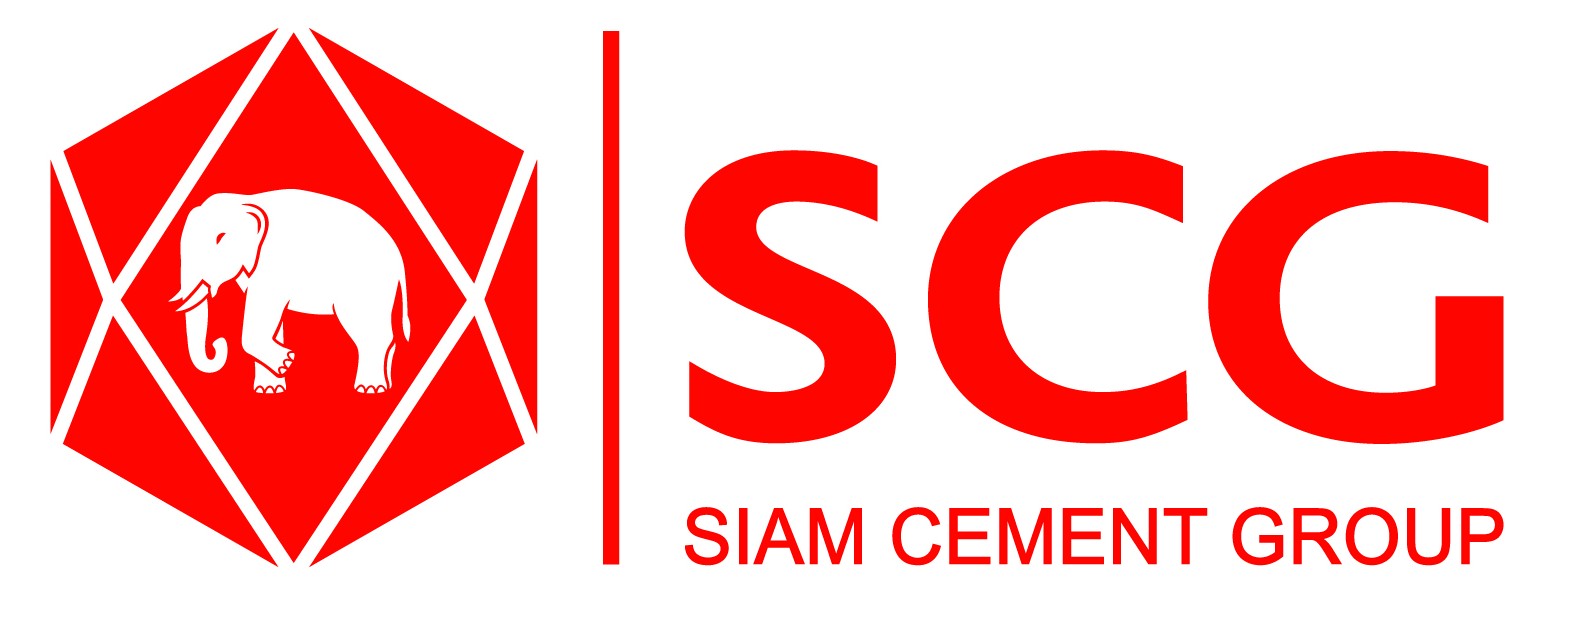 Scg Logo